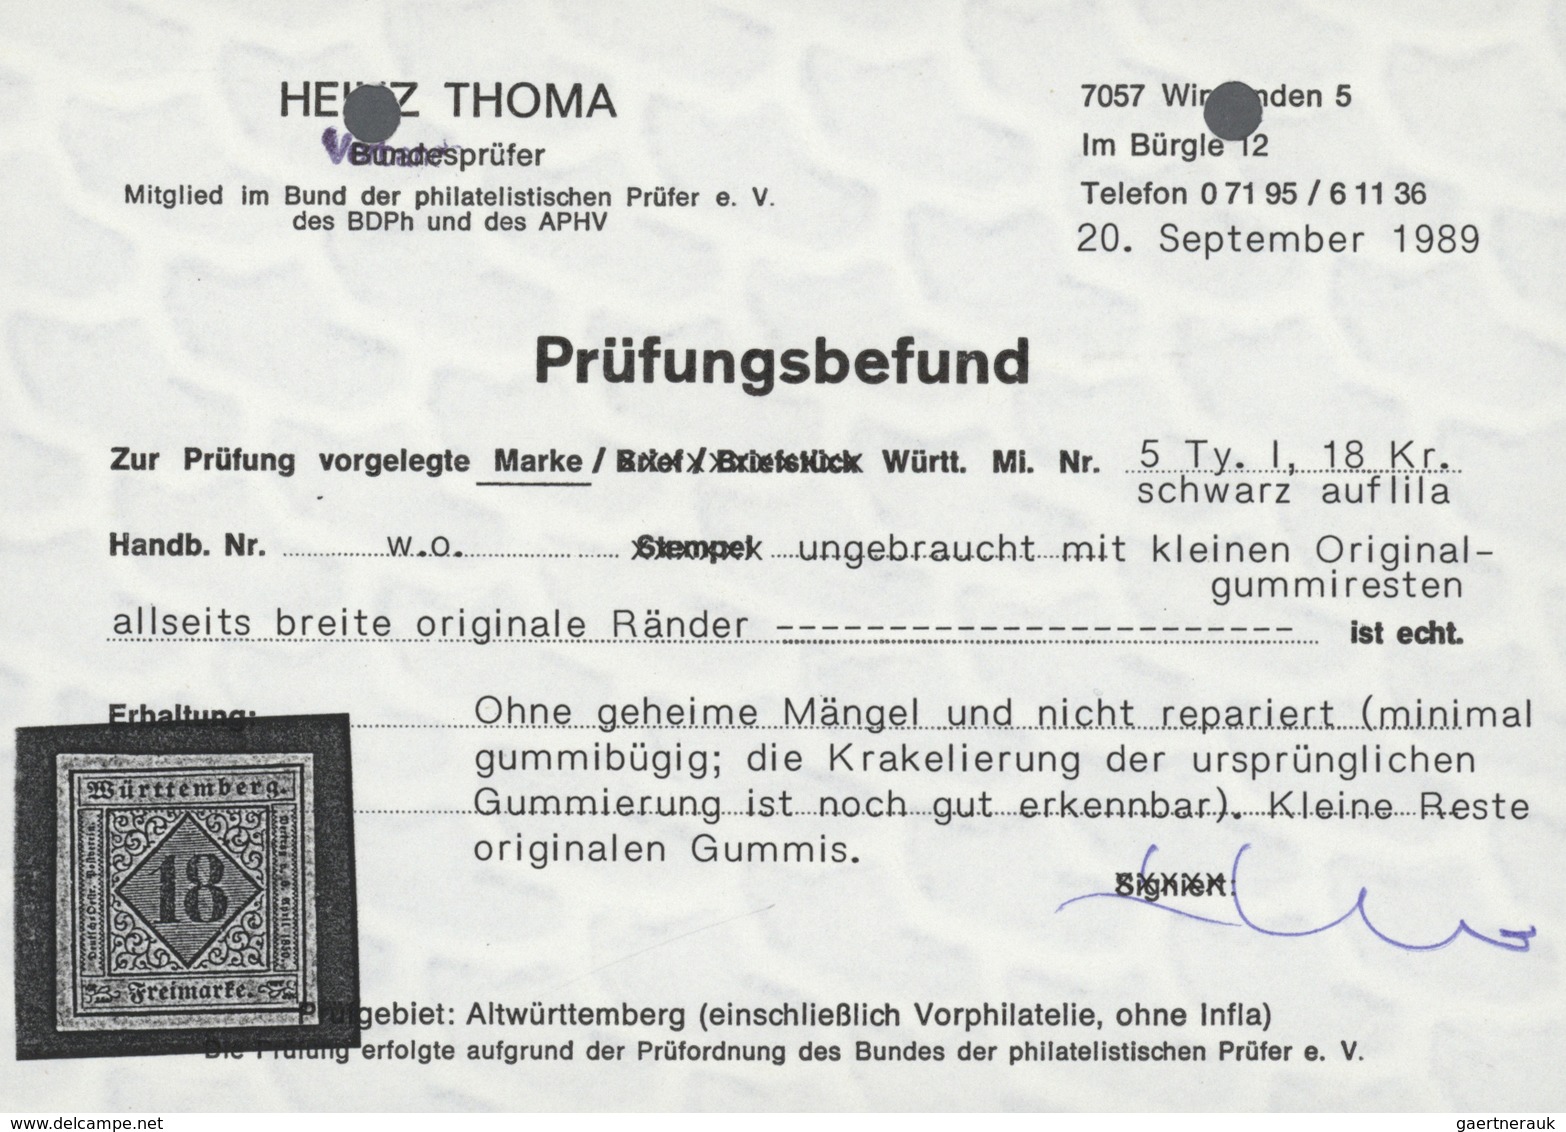 31333 Württemberg - Marken und Briefe: 1851/1923, FAST KOMPLETTE UNGEBRAUCHTE Württemberg-Sammlung nach Ha